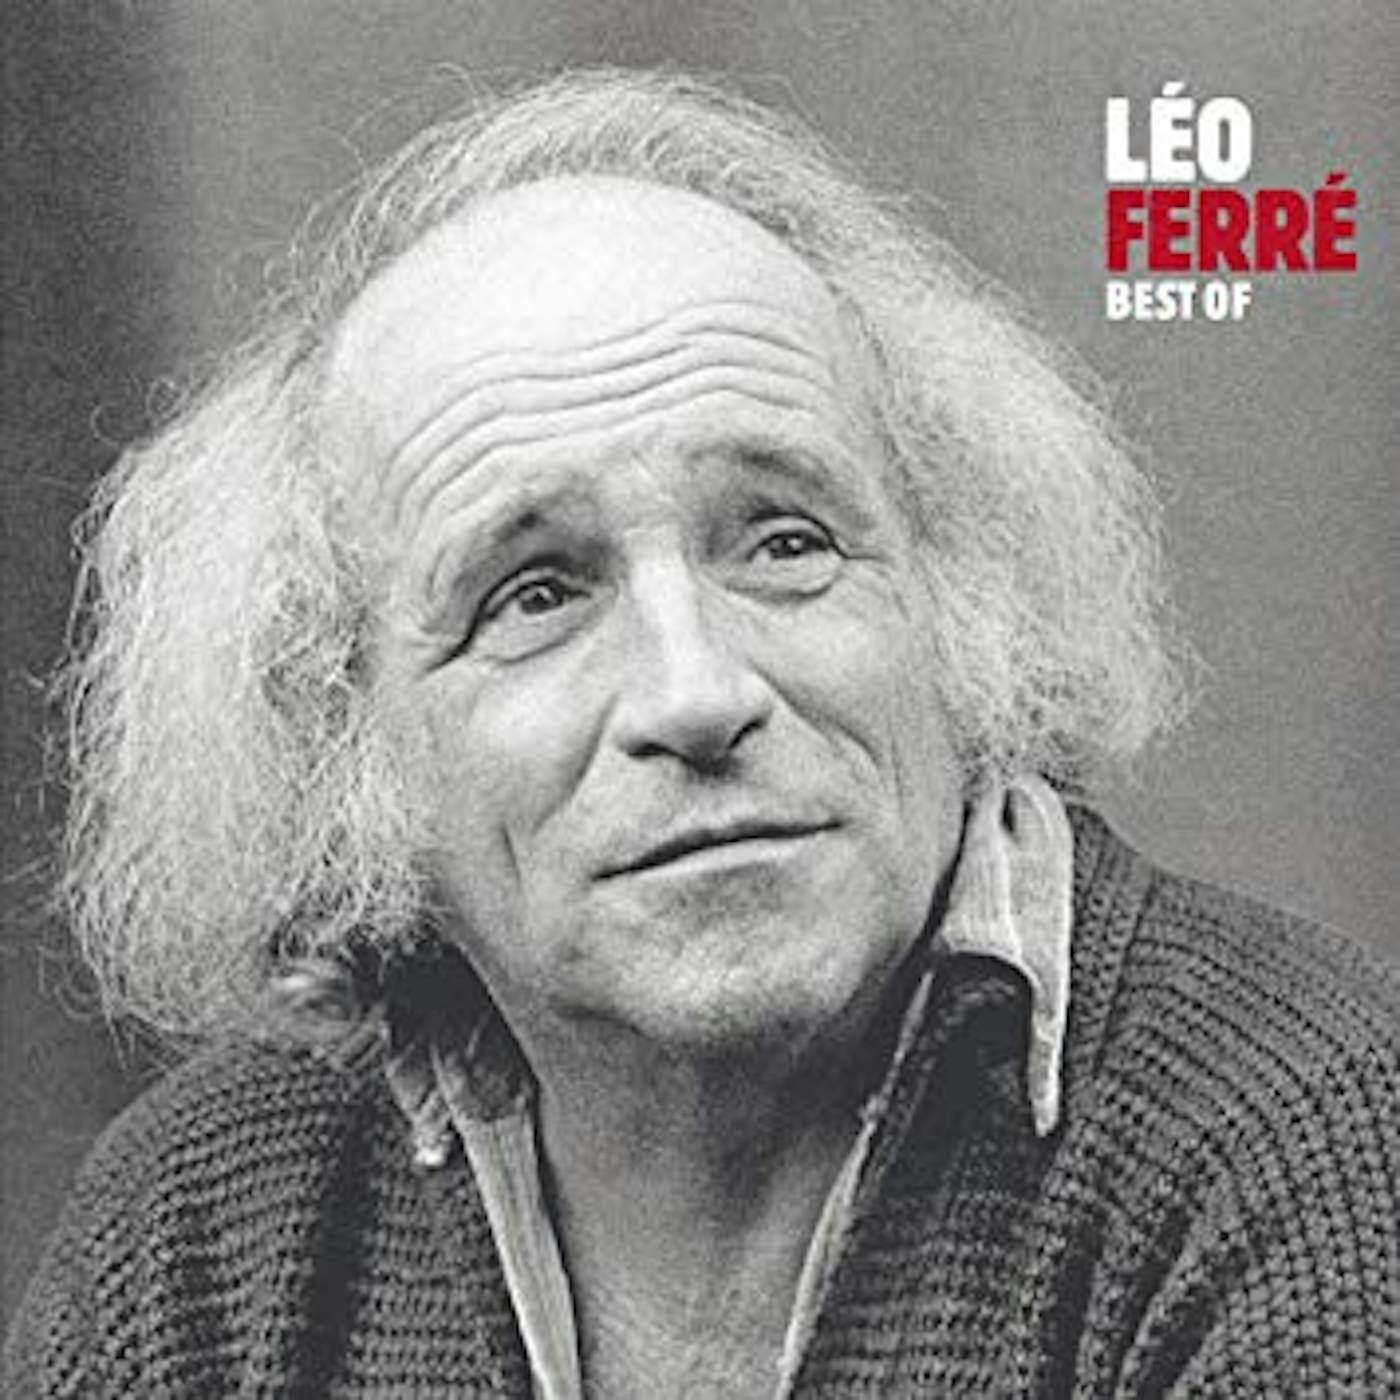 Léo Ferré BEST OF Vinyl Record